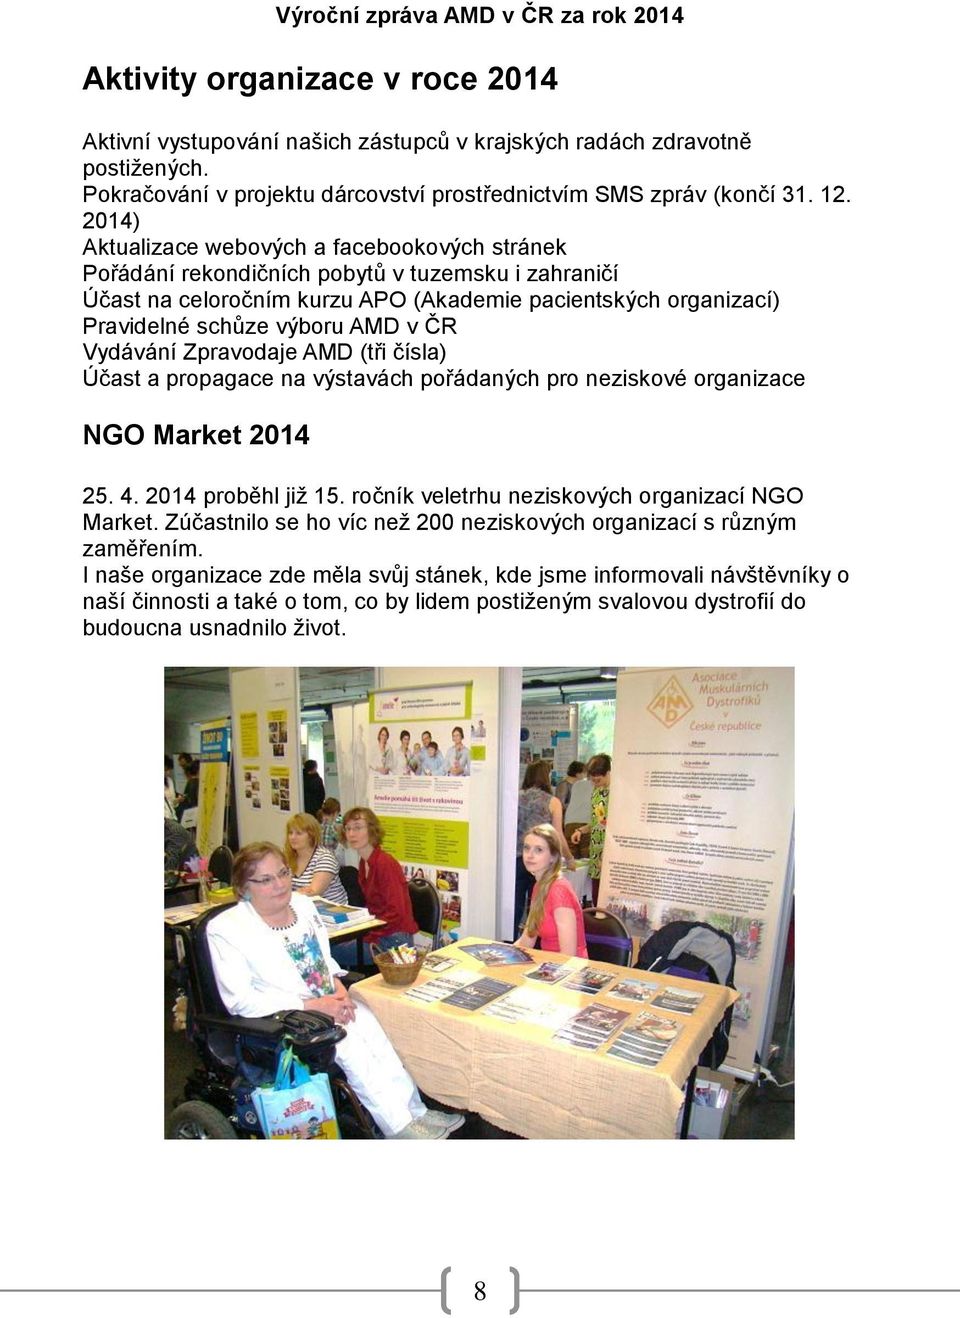 ČR Vydávání Zpravodaje AMD (tři čísla) Účast a propagace na výstavách pořádaných pro neziskové organizace NGO Market 2014 25. 4. 2014 proběhl již 15. ročník veletrhu neziskových organizací NGO Market.